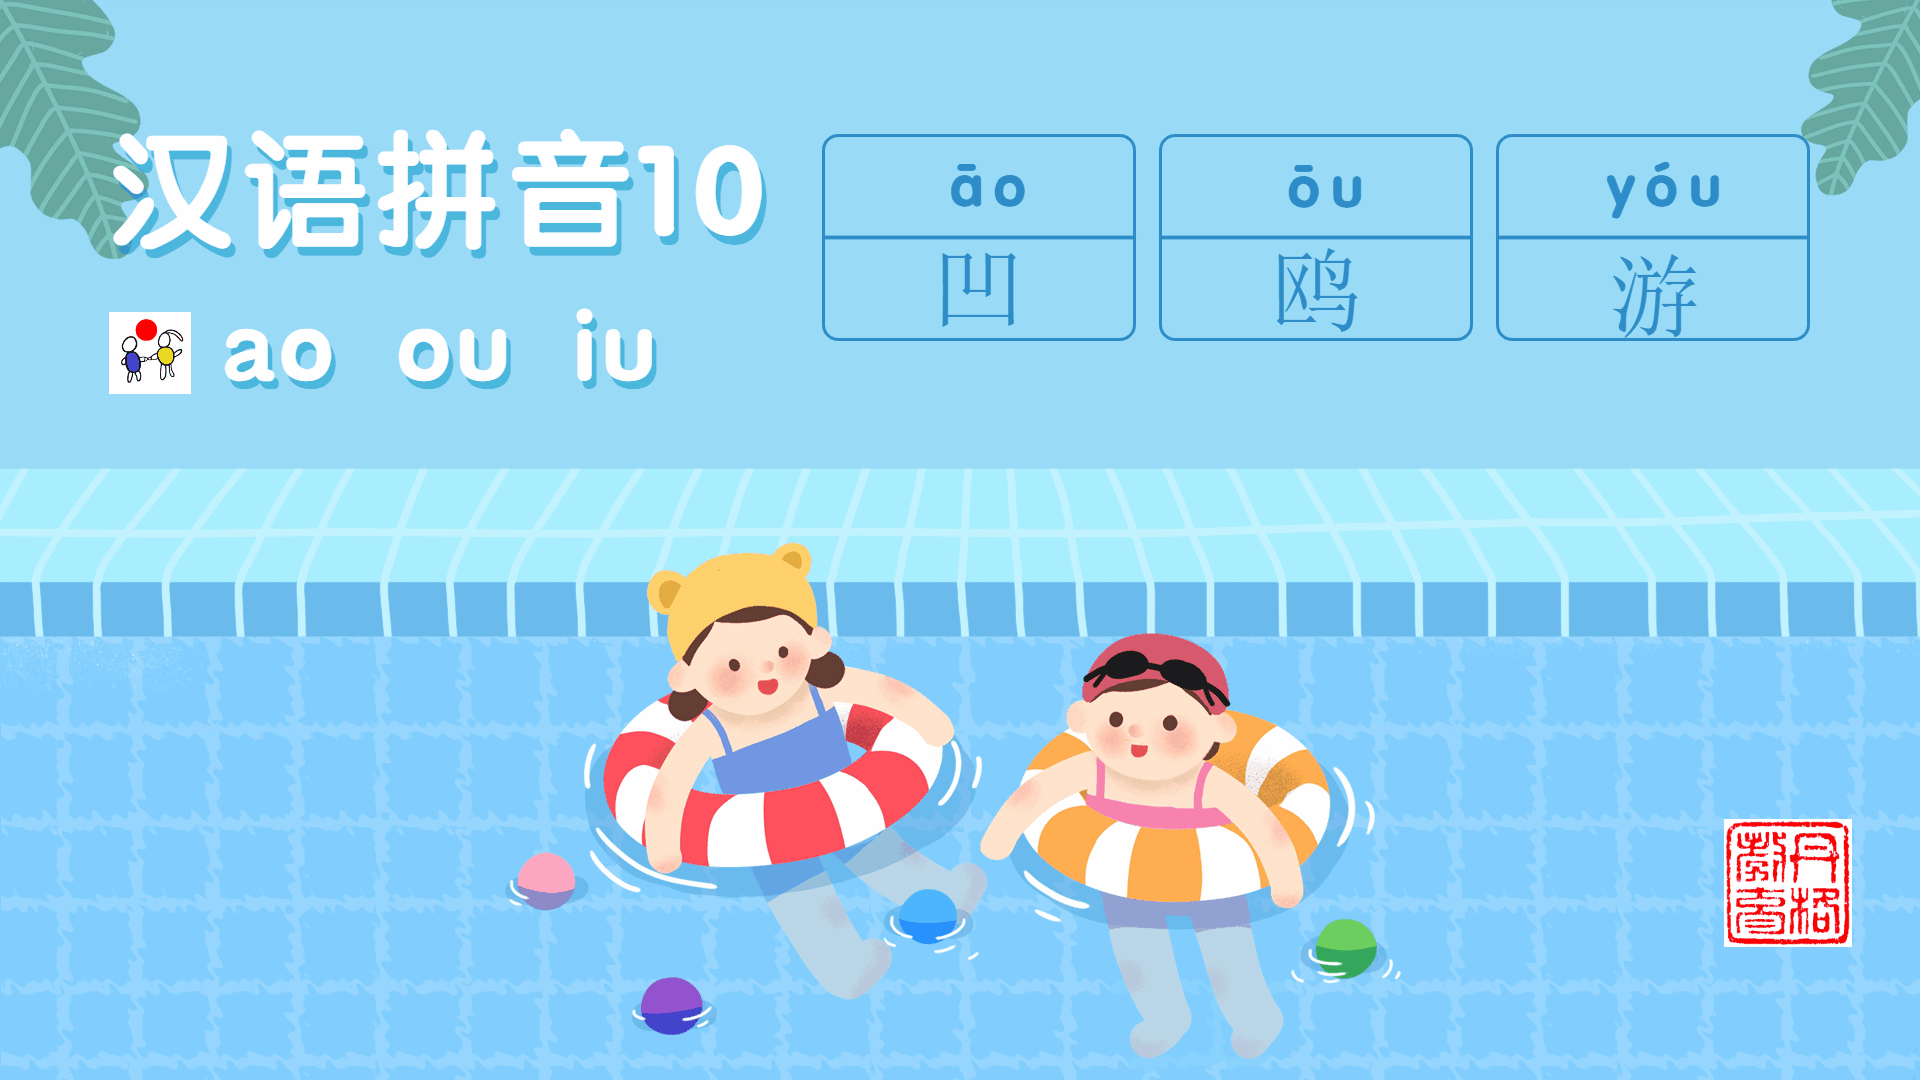 汉语拼音10《ao ou iu》一线教师分享小学拼音学习方法